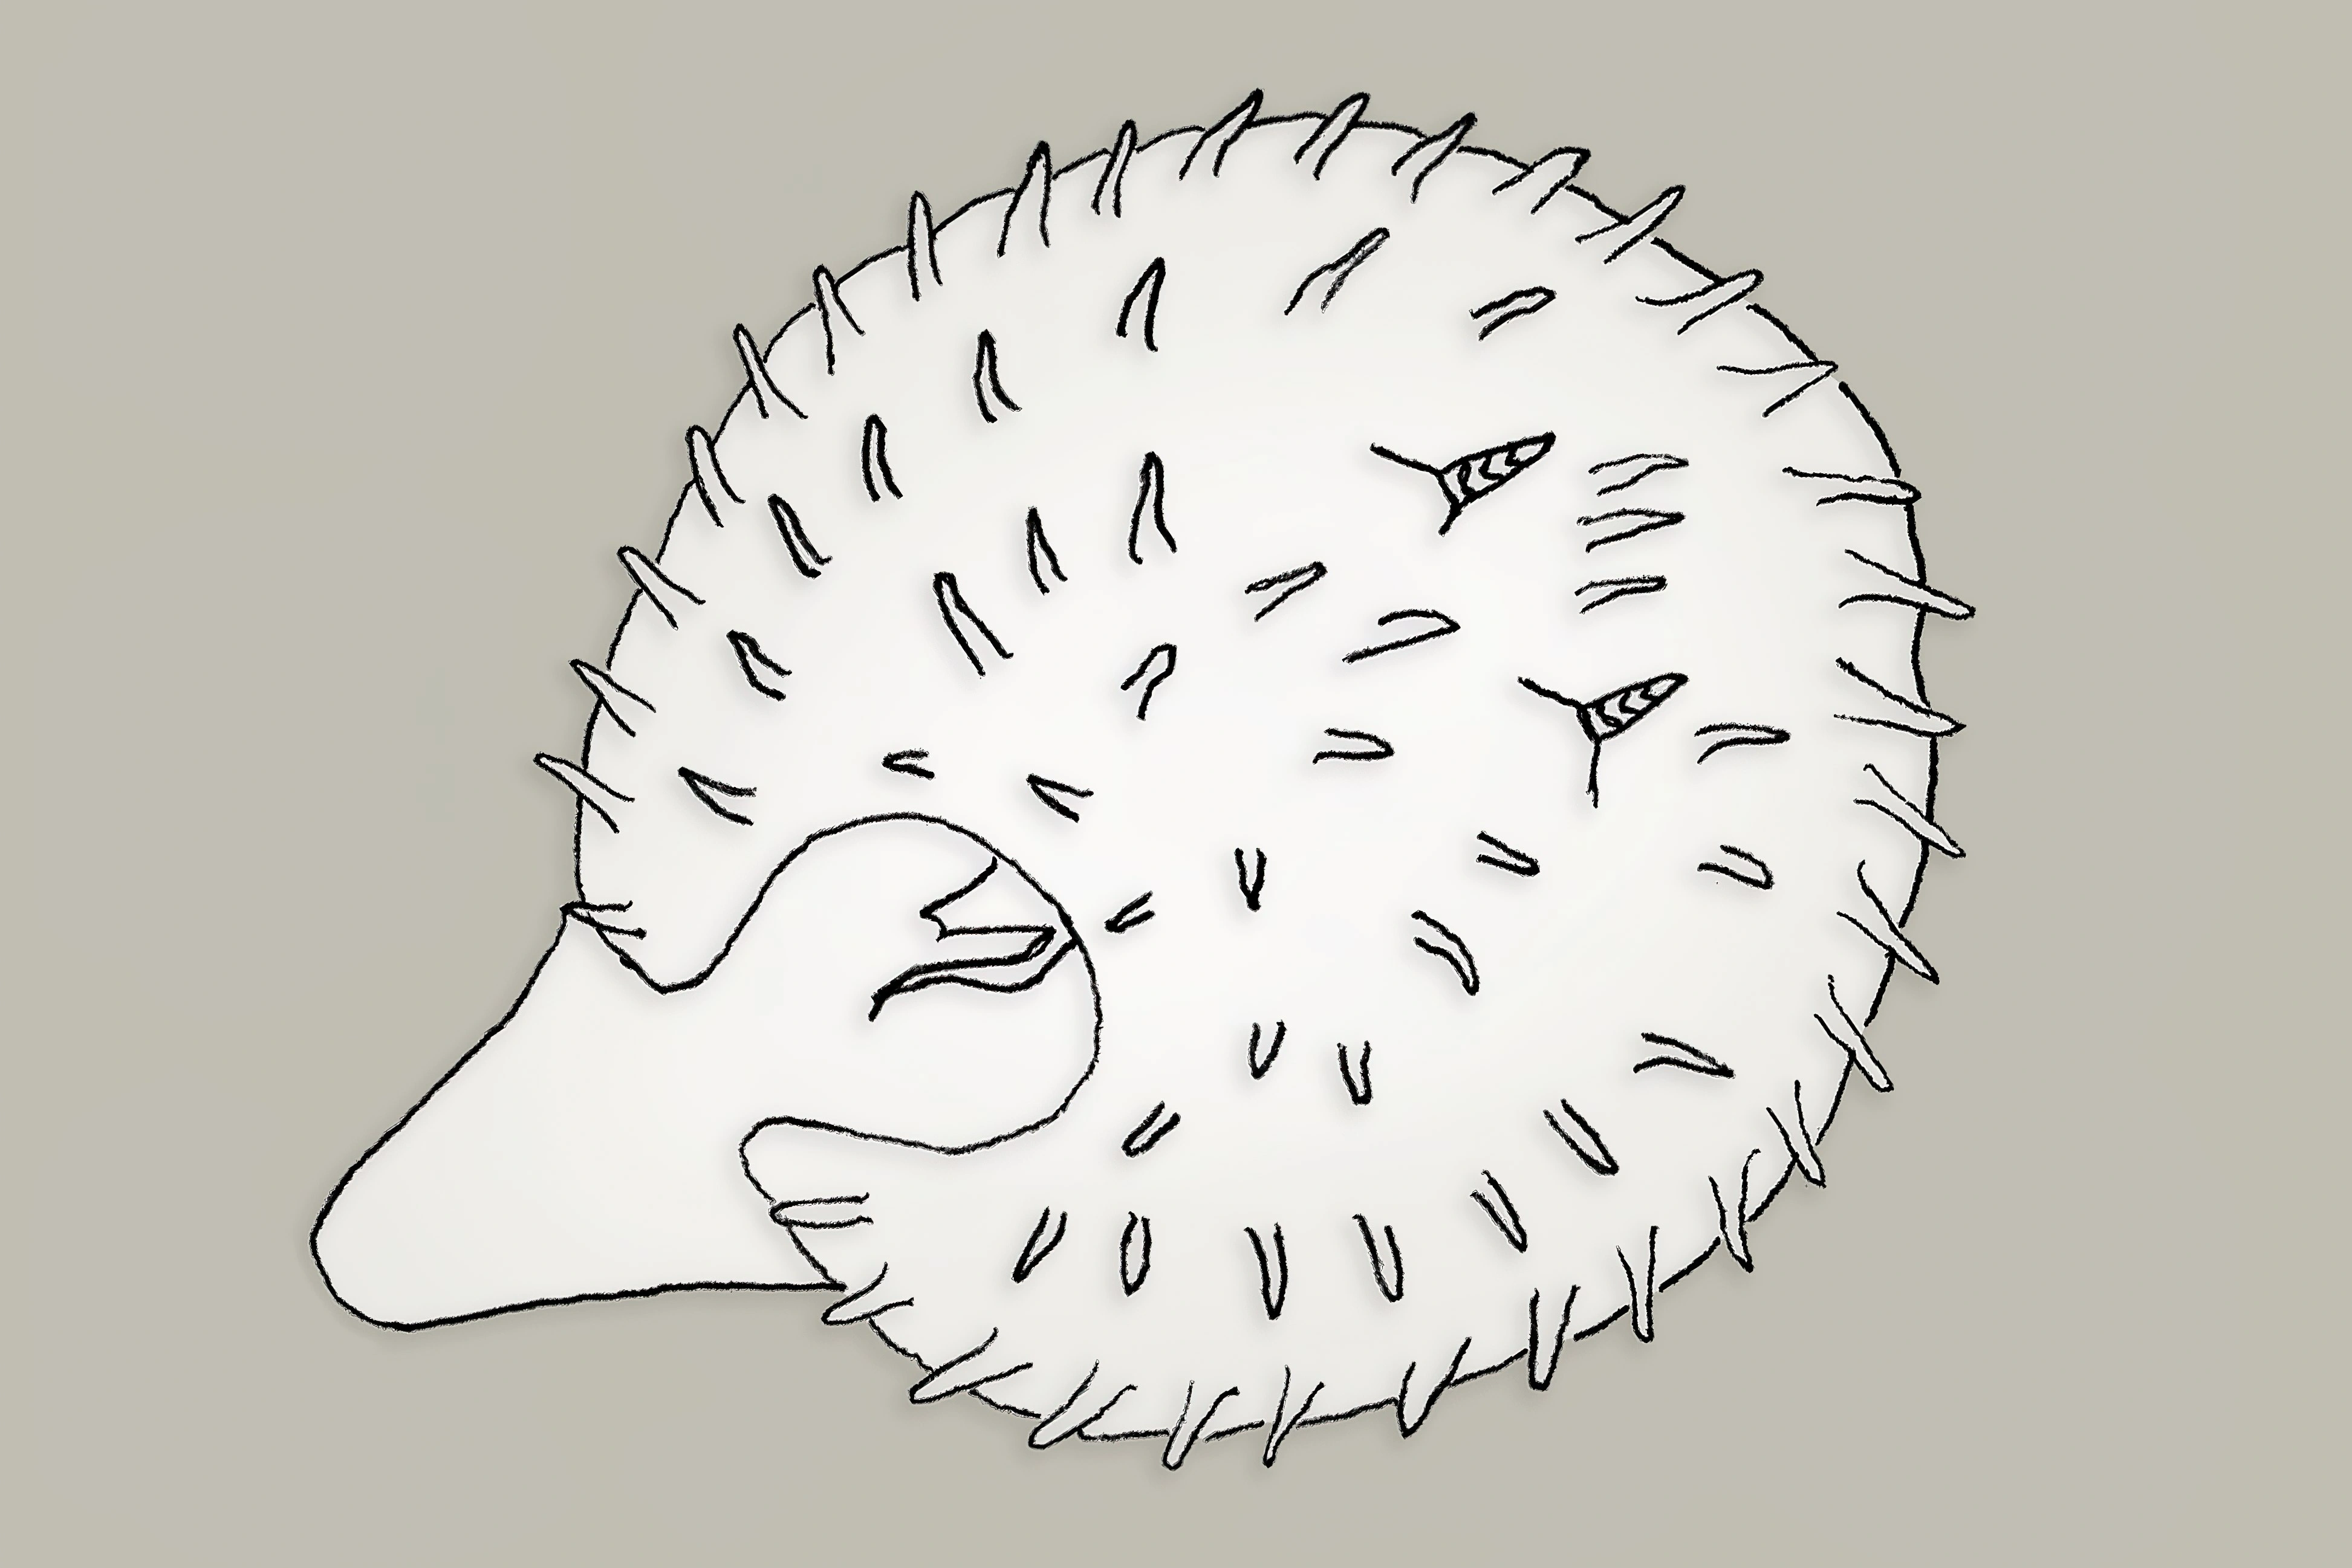 Nakensnegler: Echinocorambe brattegardi.